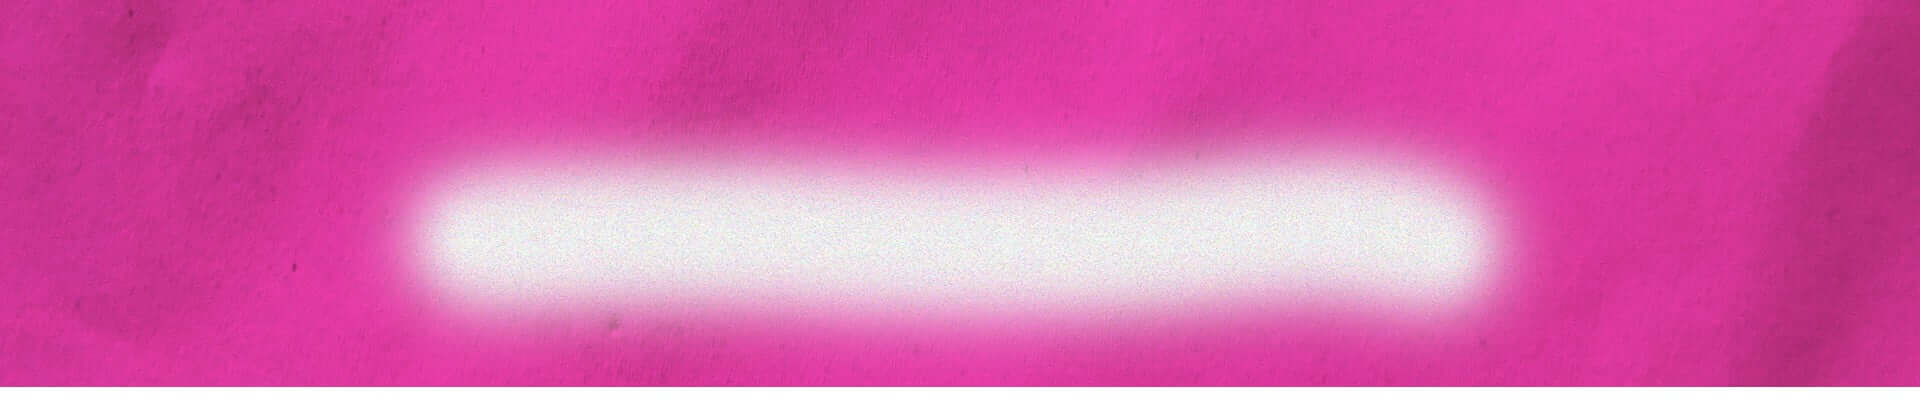 Gradient pink background.